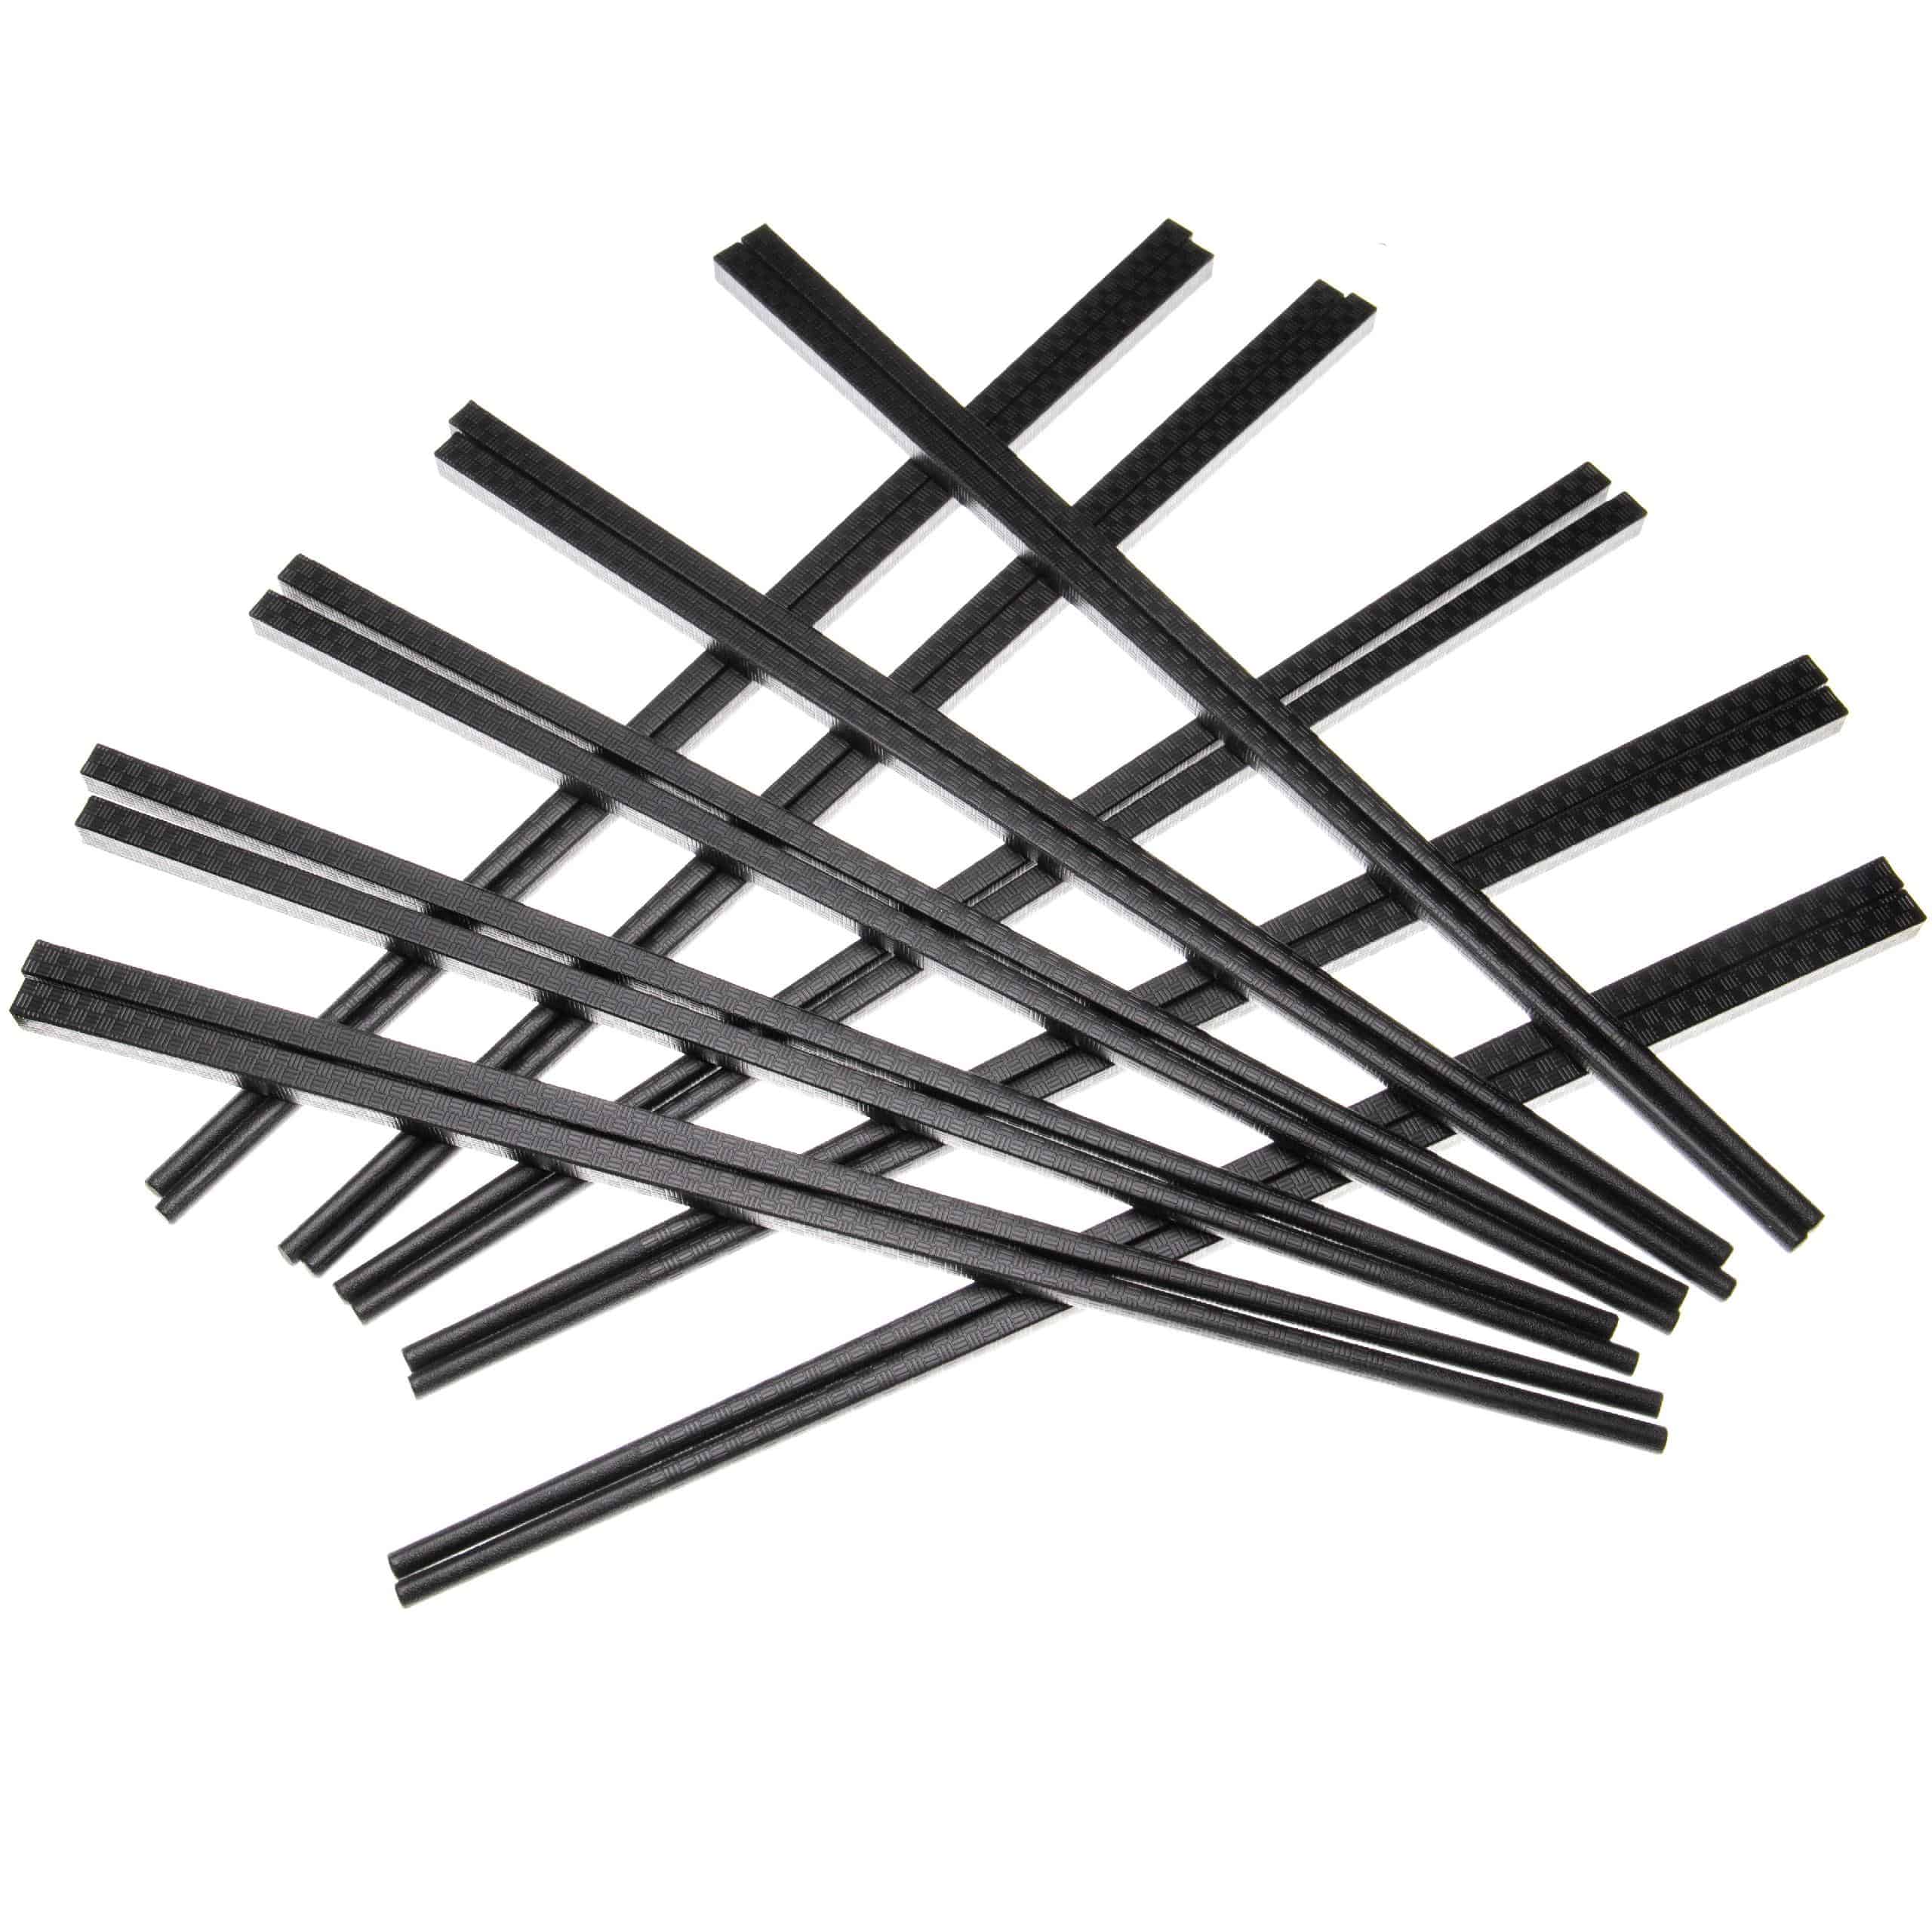 Essstäbchen-Sets (10 Paare) - Kunststoff, schwarz, 27 cm lang, gemustert, Wiederwendbar